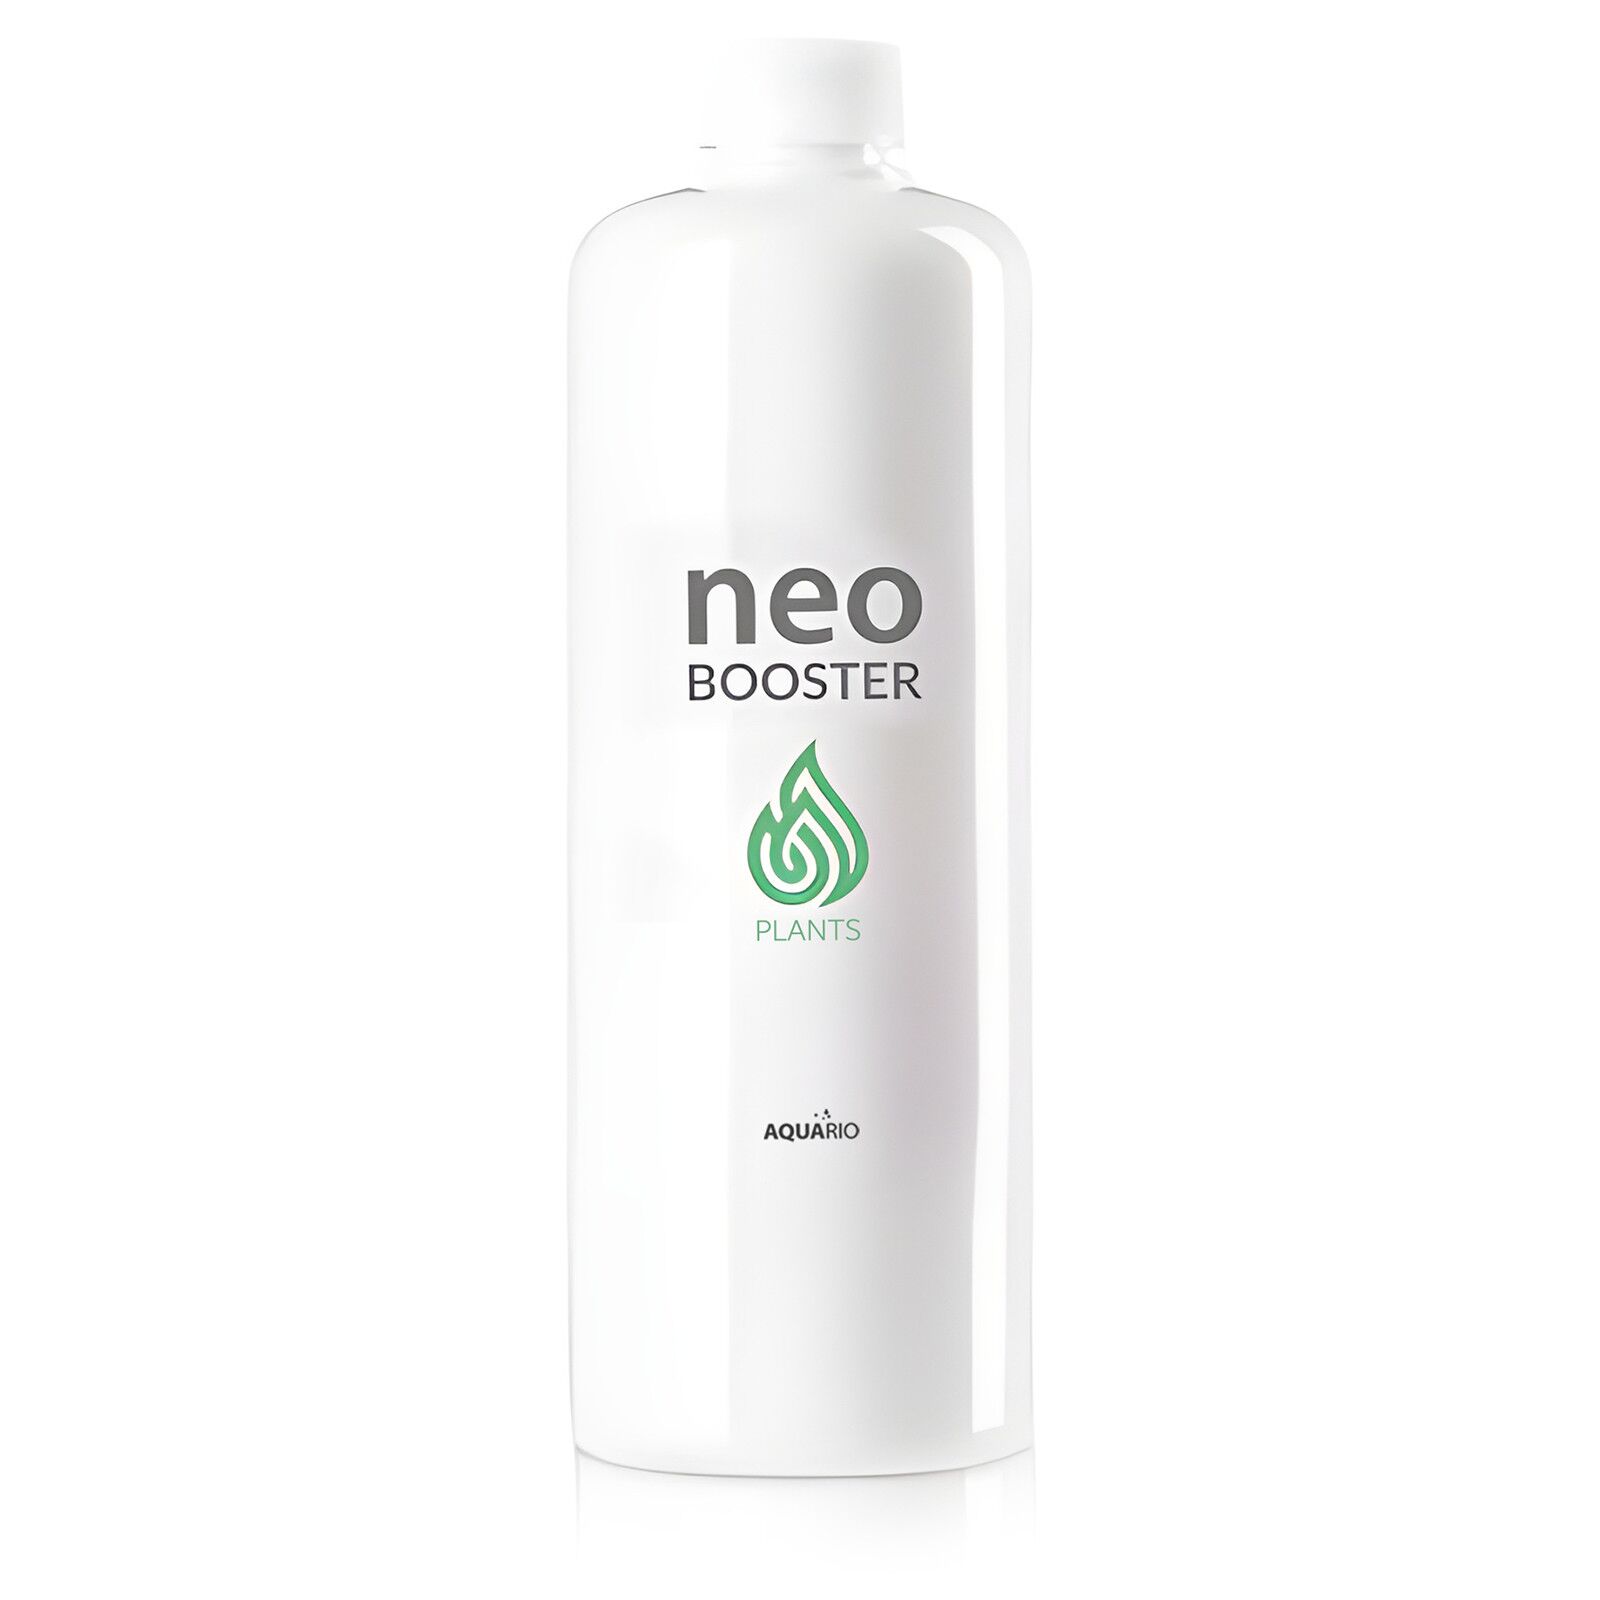 AQUARIO - Neo Booster Plants - Water Conditioner